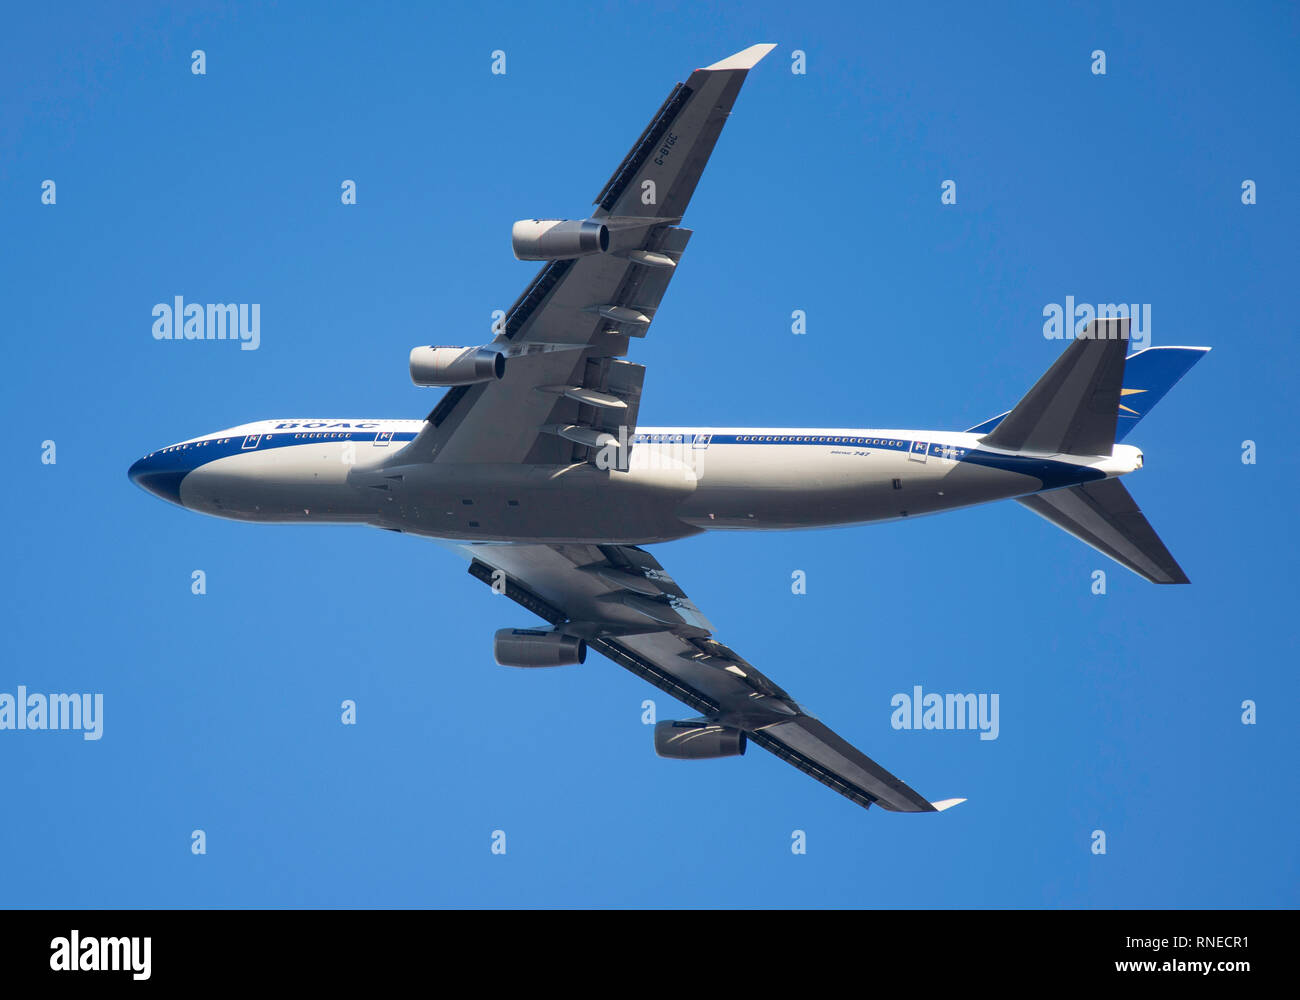 Londra Heathrow, UK. 19 feb 2019. British Airways Boeing 747-436 aeromobili (100 Retro-nella vecchia livrea BOAC) il decollo dall'aeroporto di Heathrow, Greater London, England, Regno Unito Credito: Greg Balfour Evans/Alamy Live News Foto Stock